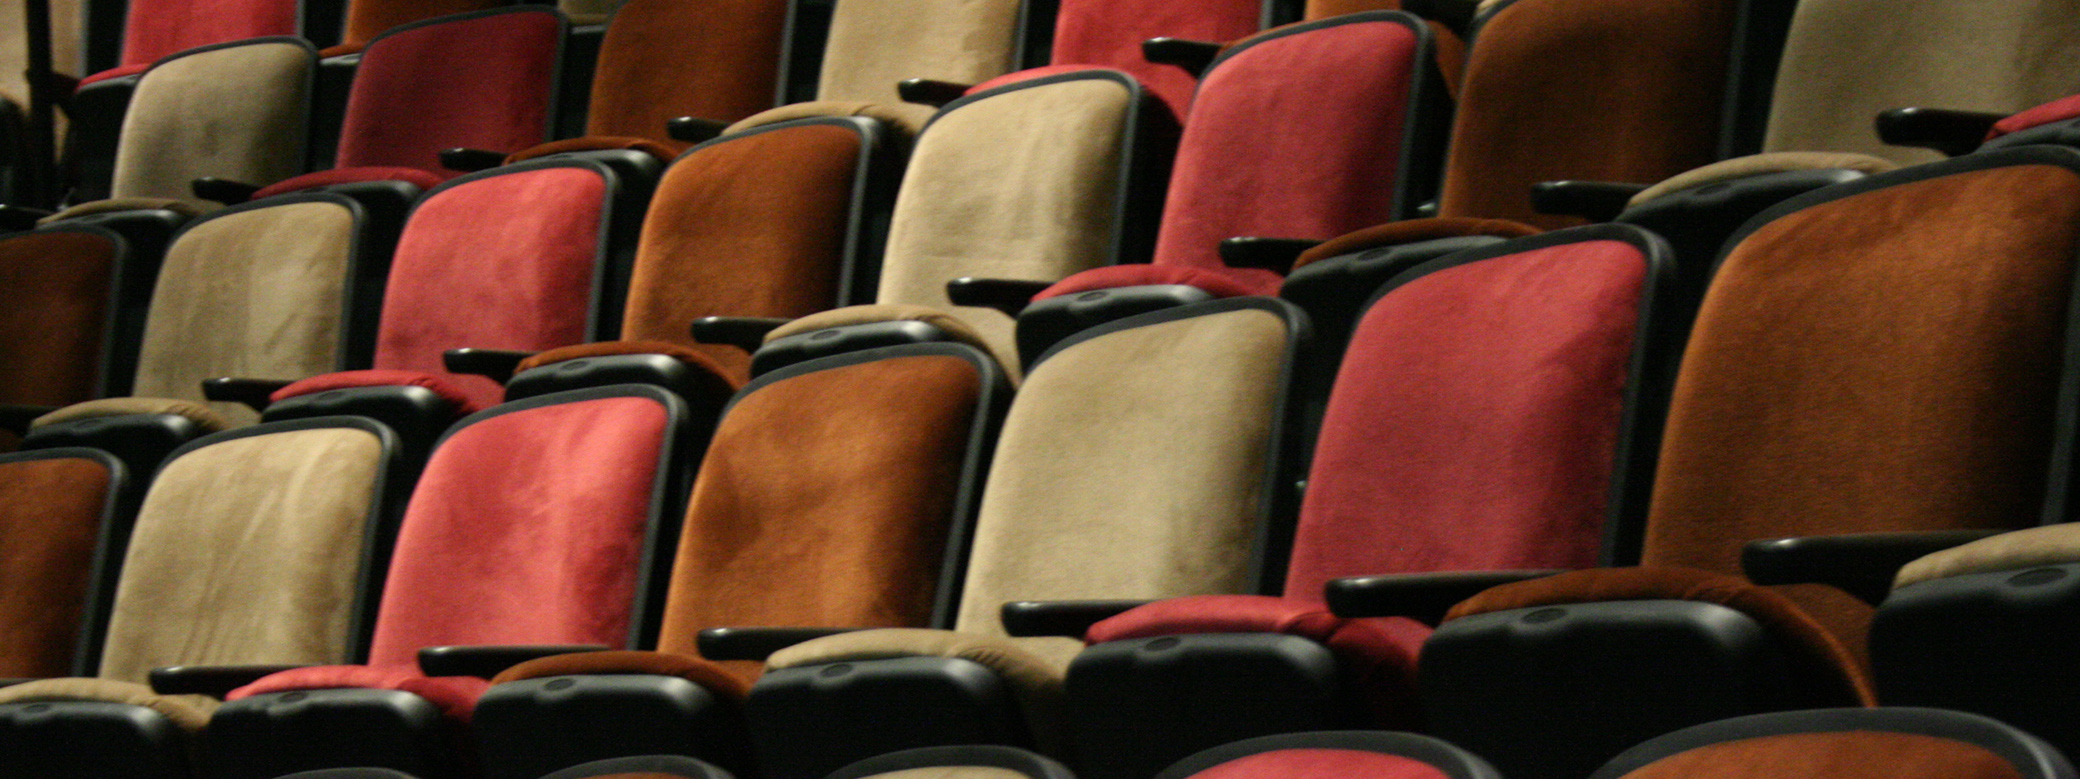 Theater seats in the UW's Jones Playhouse